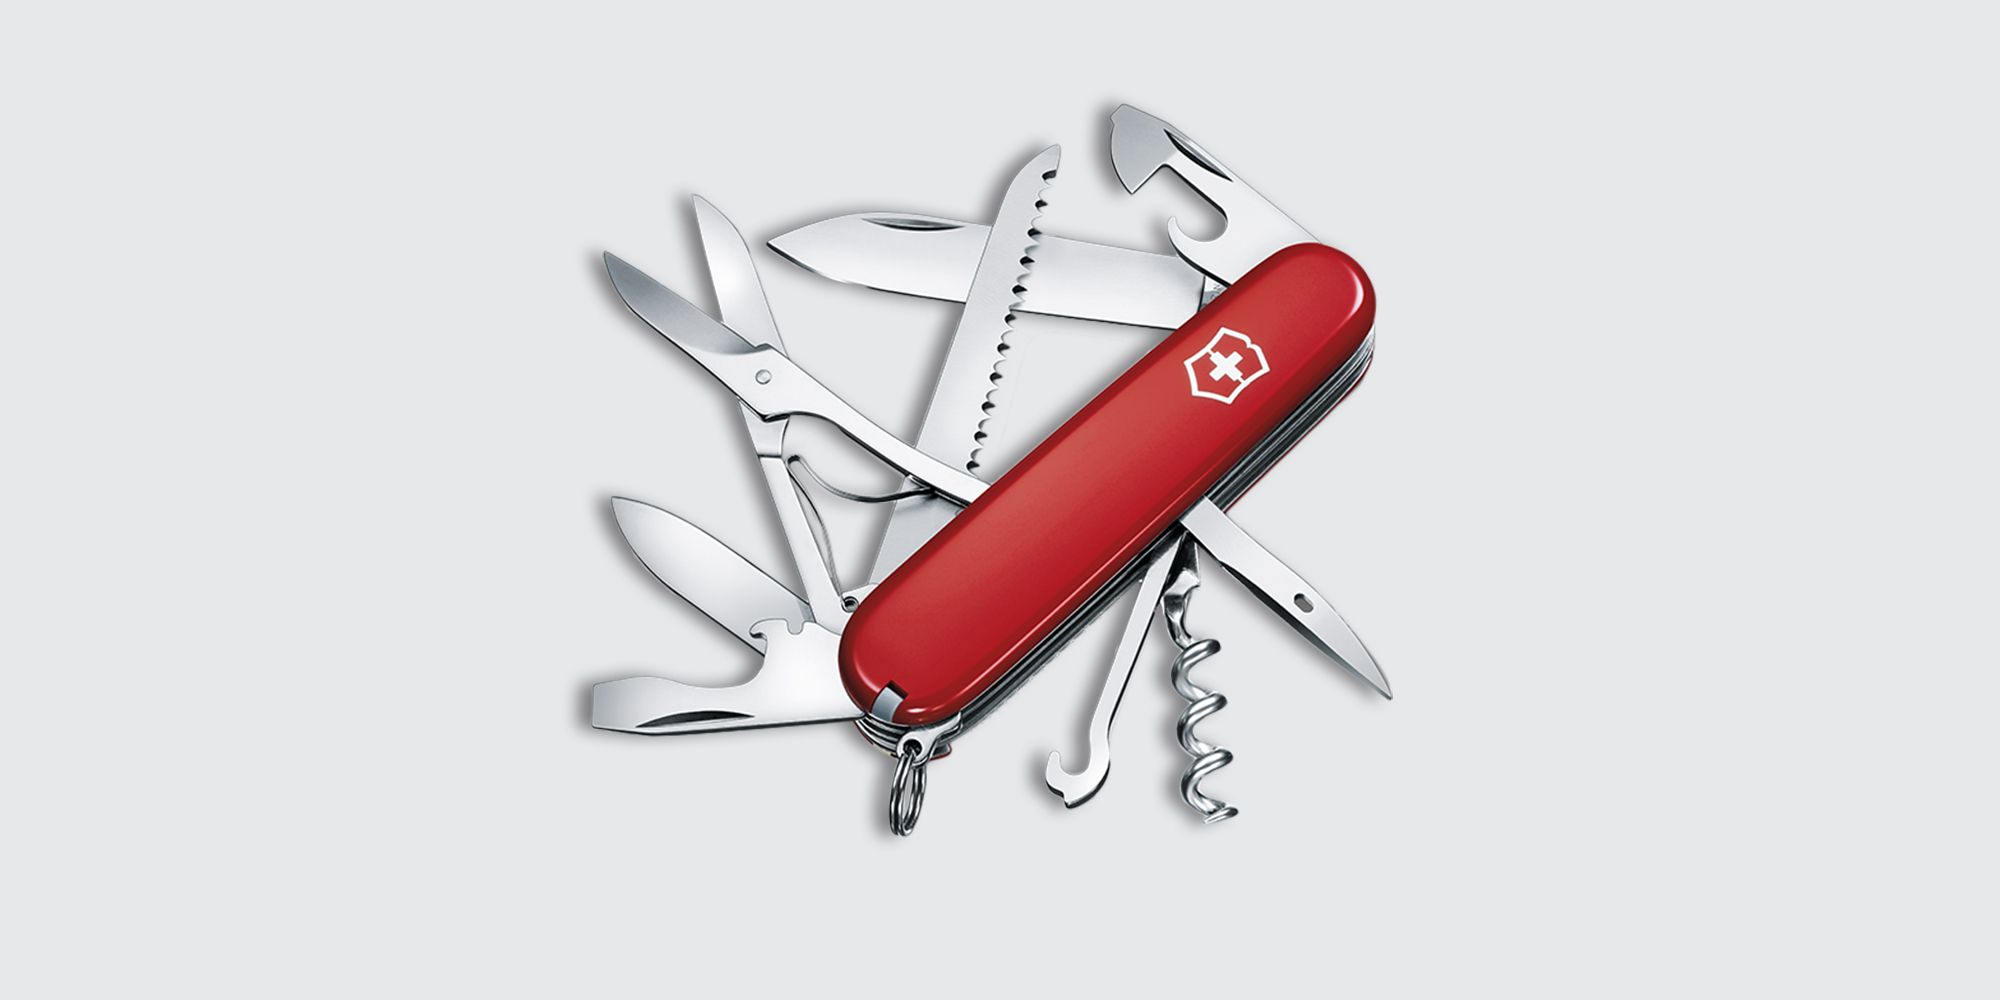 Victorinox Huntsman Swiss Army Knife at Swiss Knife Shop